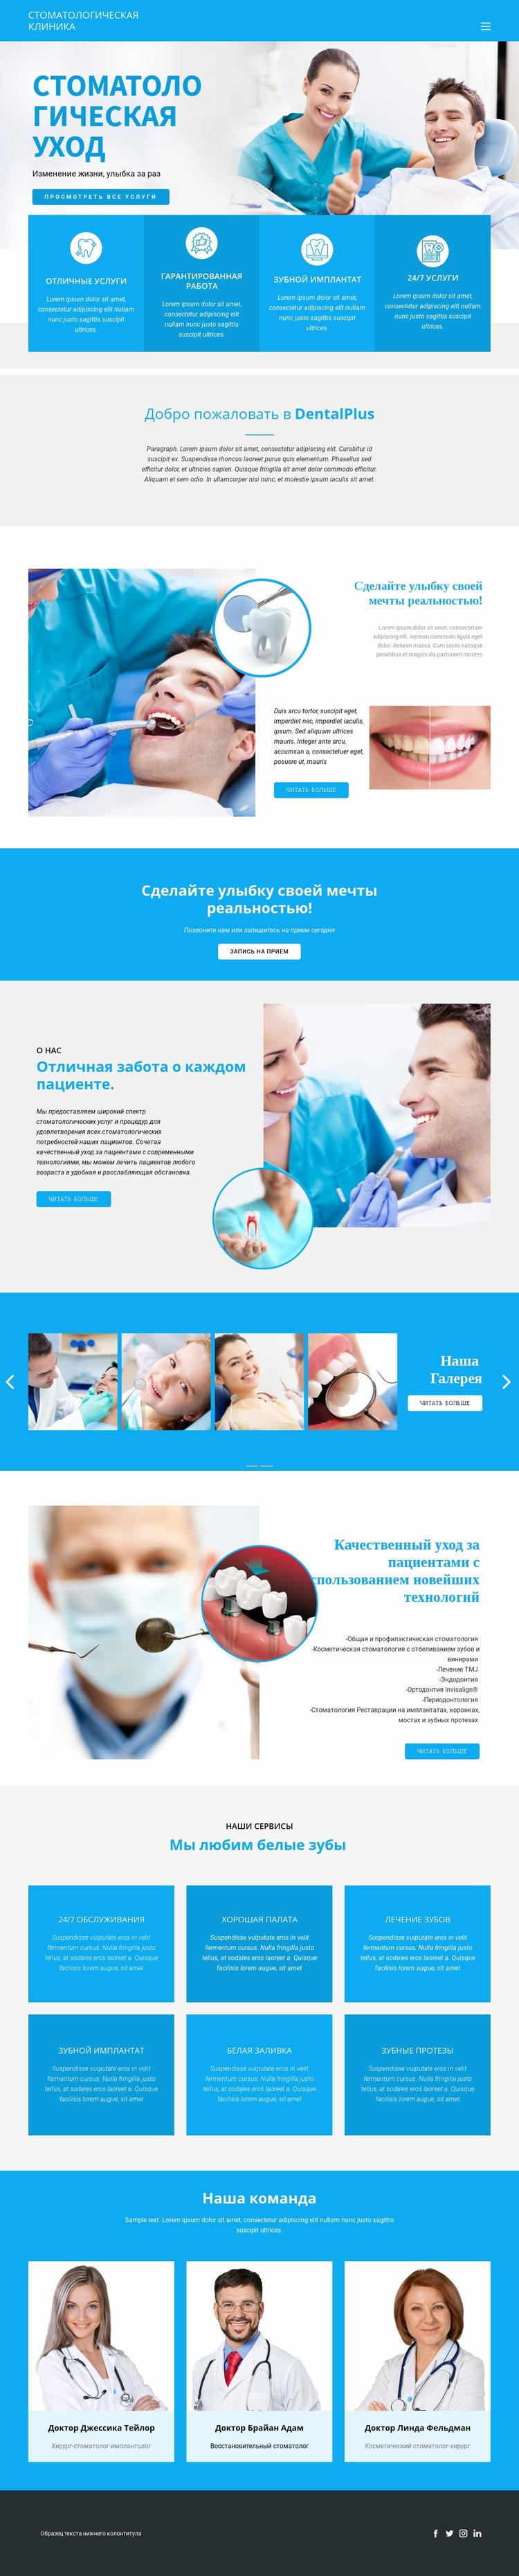 Стоматология и медицина Шаблон веб-сайта